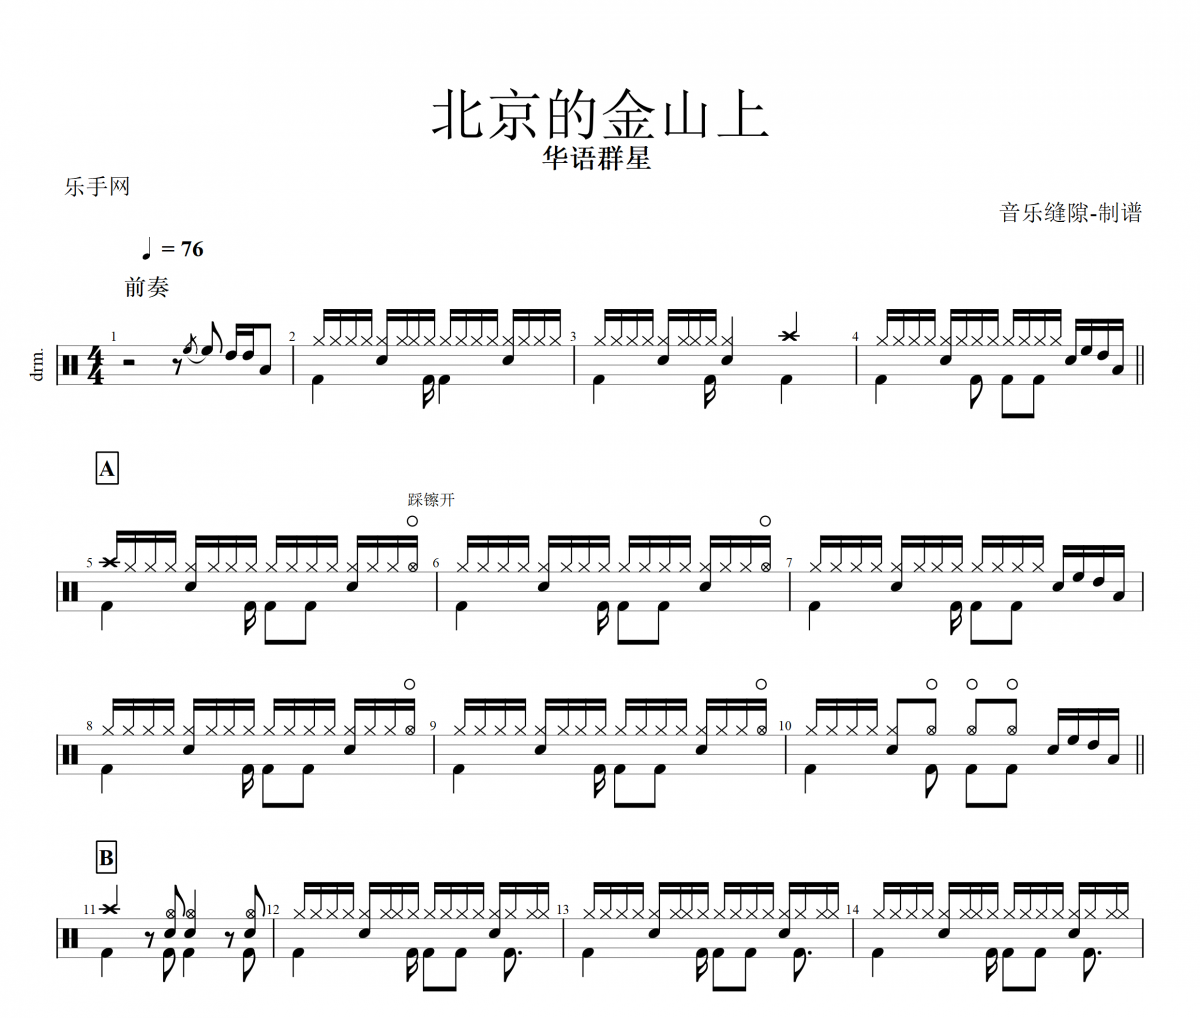 【红歌精选】北京的金山上鼓谱 华语群星-北京的金山上架子鼓谱